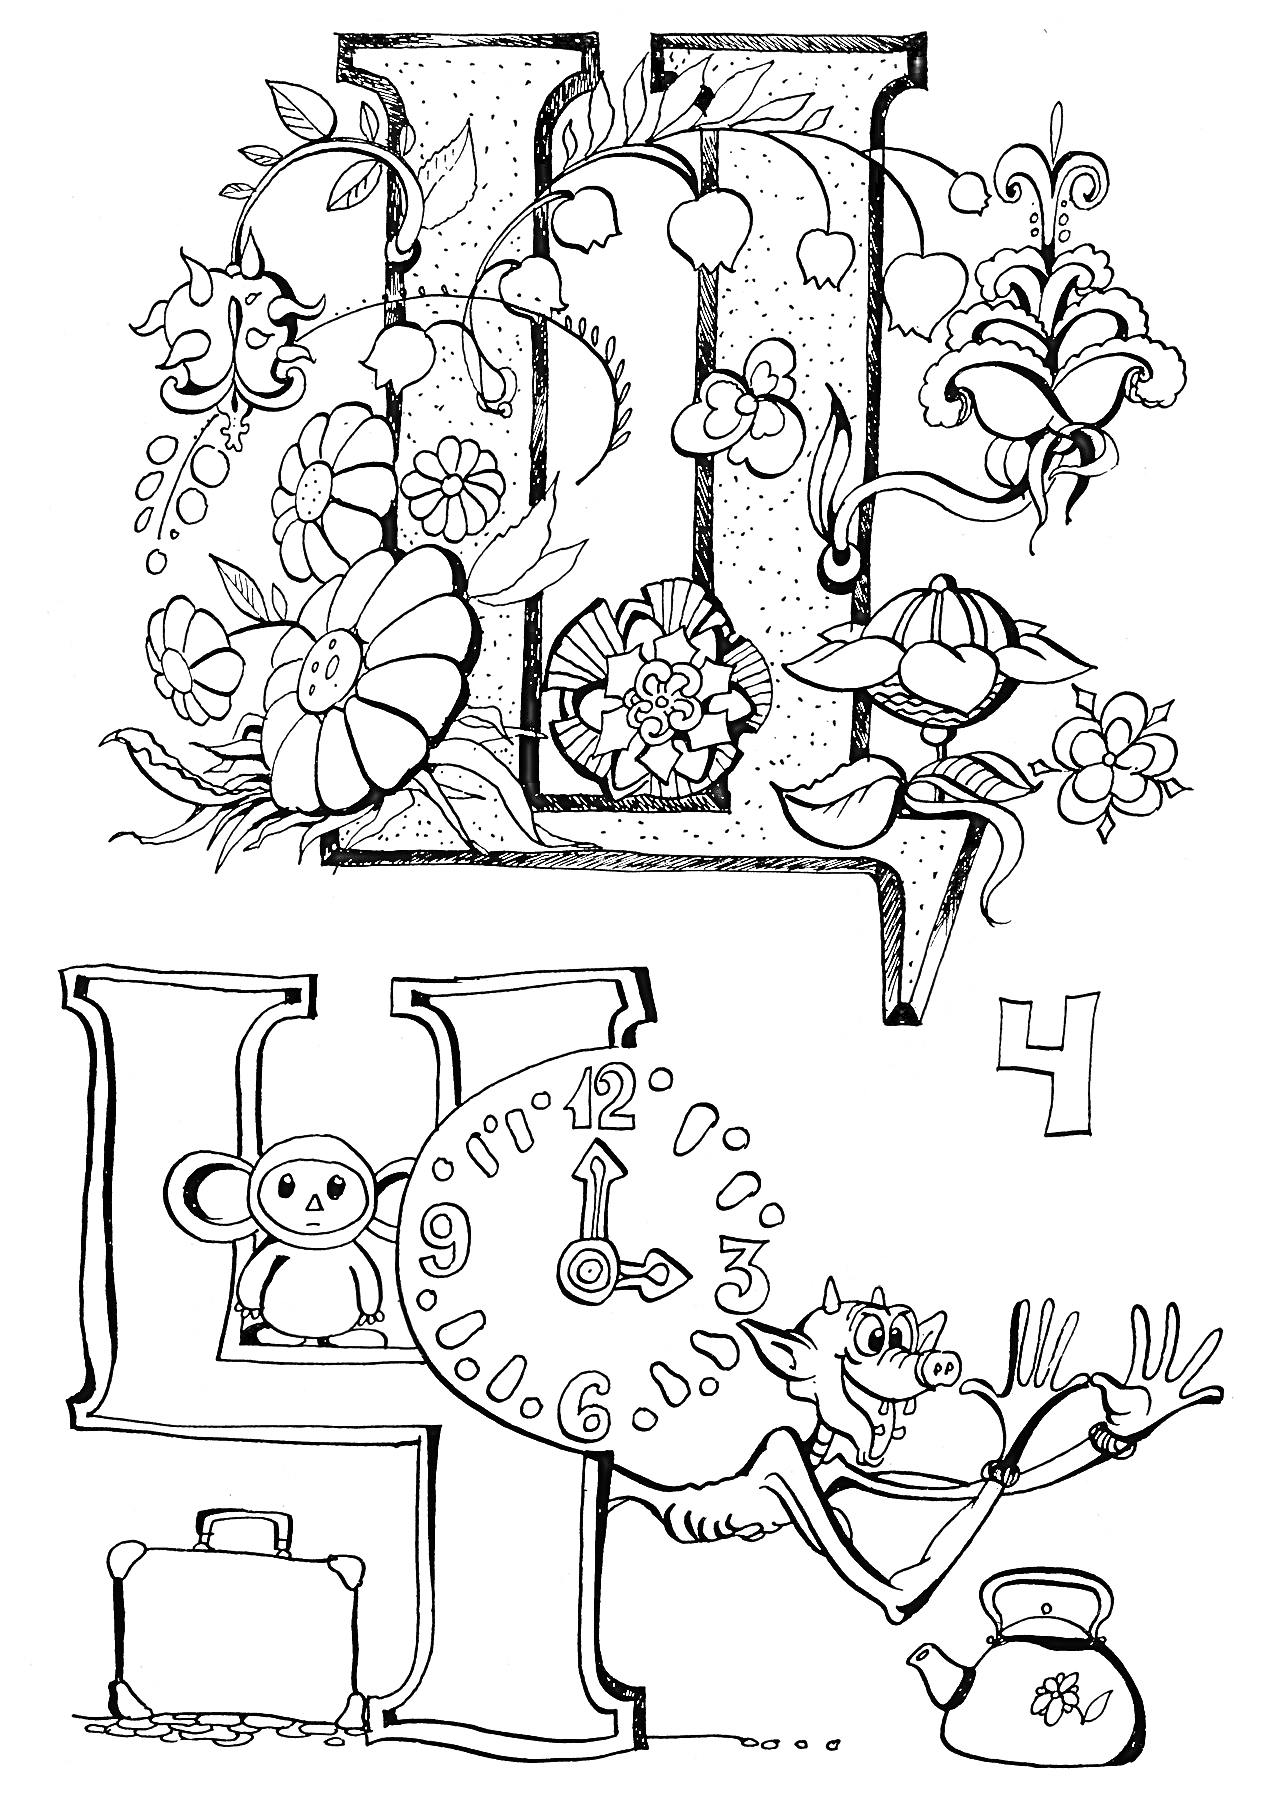 Раскраска Буква Ц с цветами, мышонком, часами, чемоданом, чайником и цифрой 4